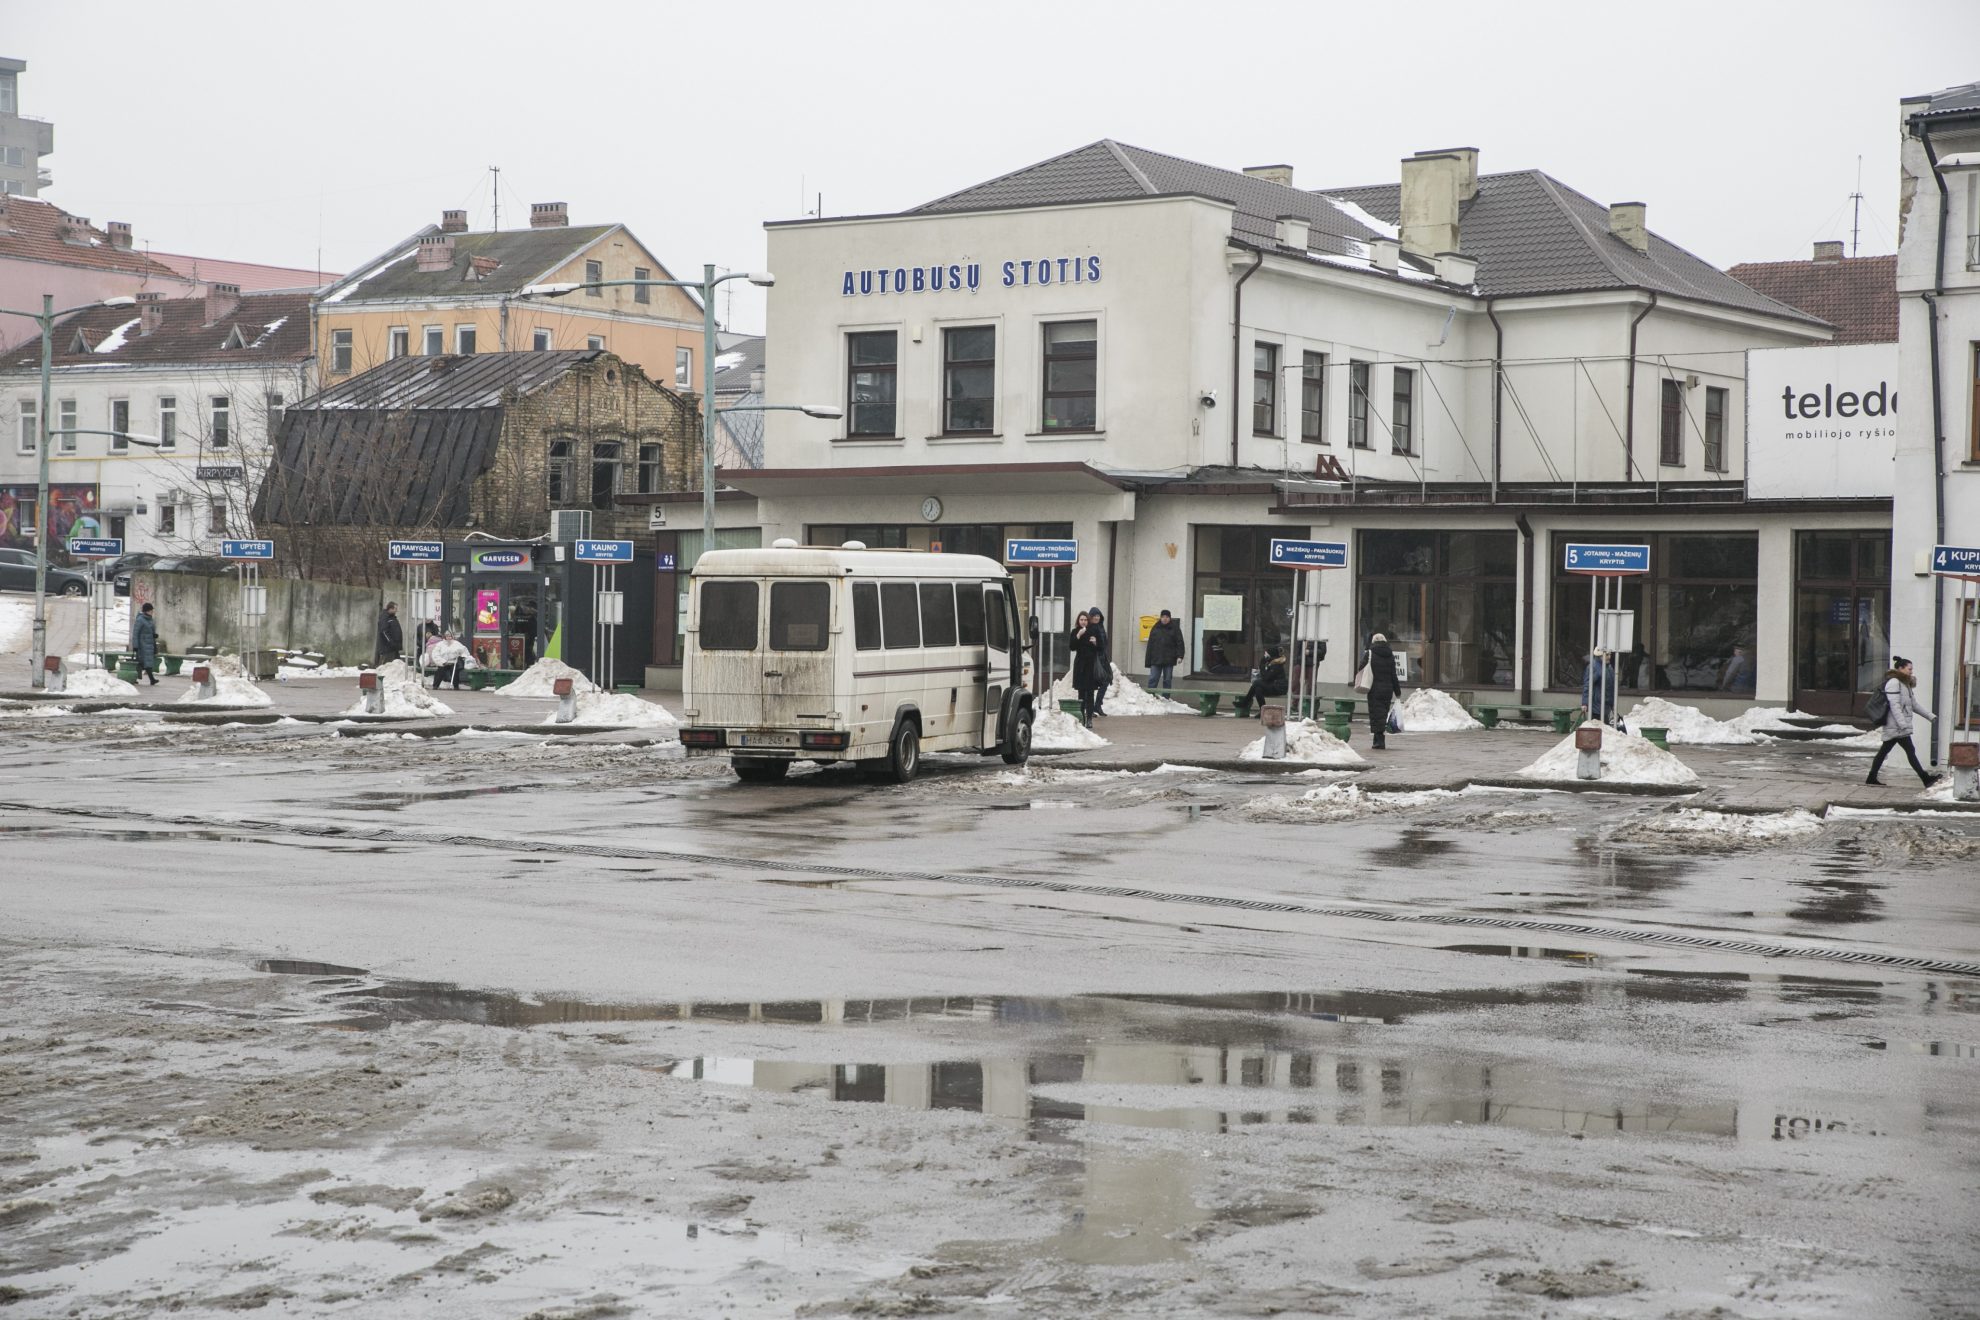 Būsimoji Panevėžio autobusų stotis virto karo kirviu miesto politinėje arenoje.